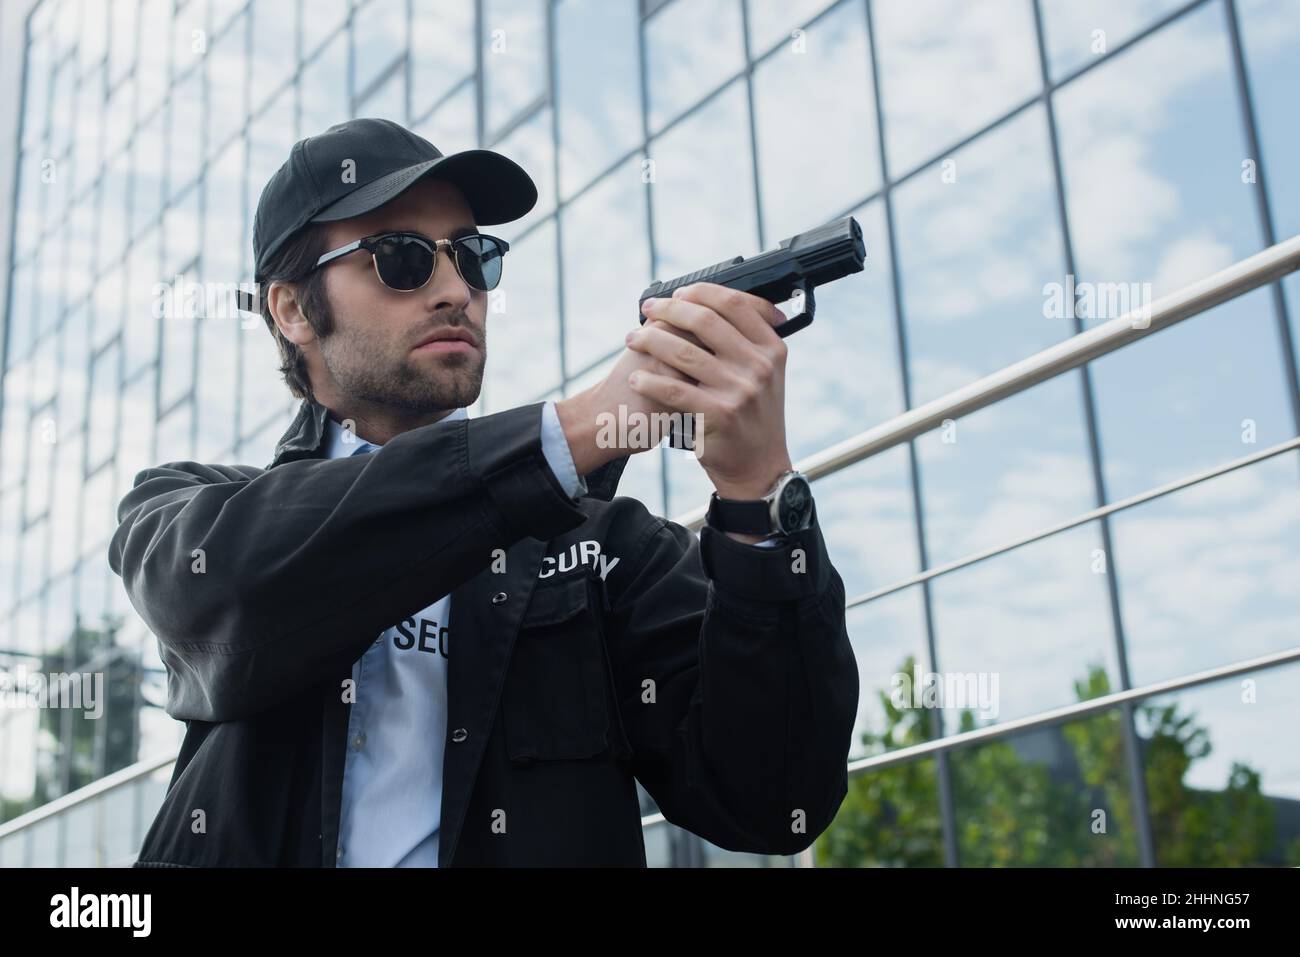 uomo di sicurezza in uniforme nera e occhiali da sole che tengono la pistola mentre si guarda via sulla strada urbana Foto Stock